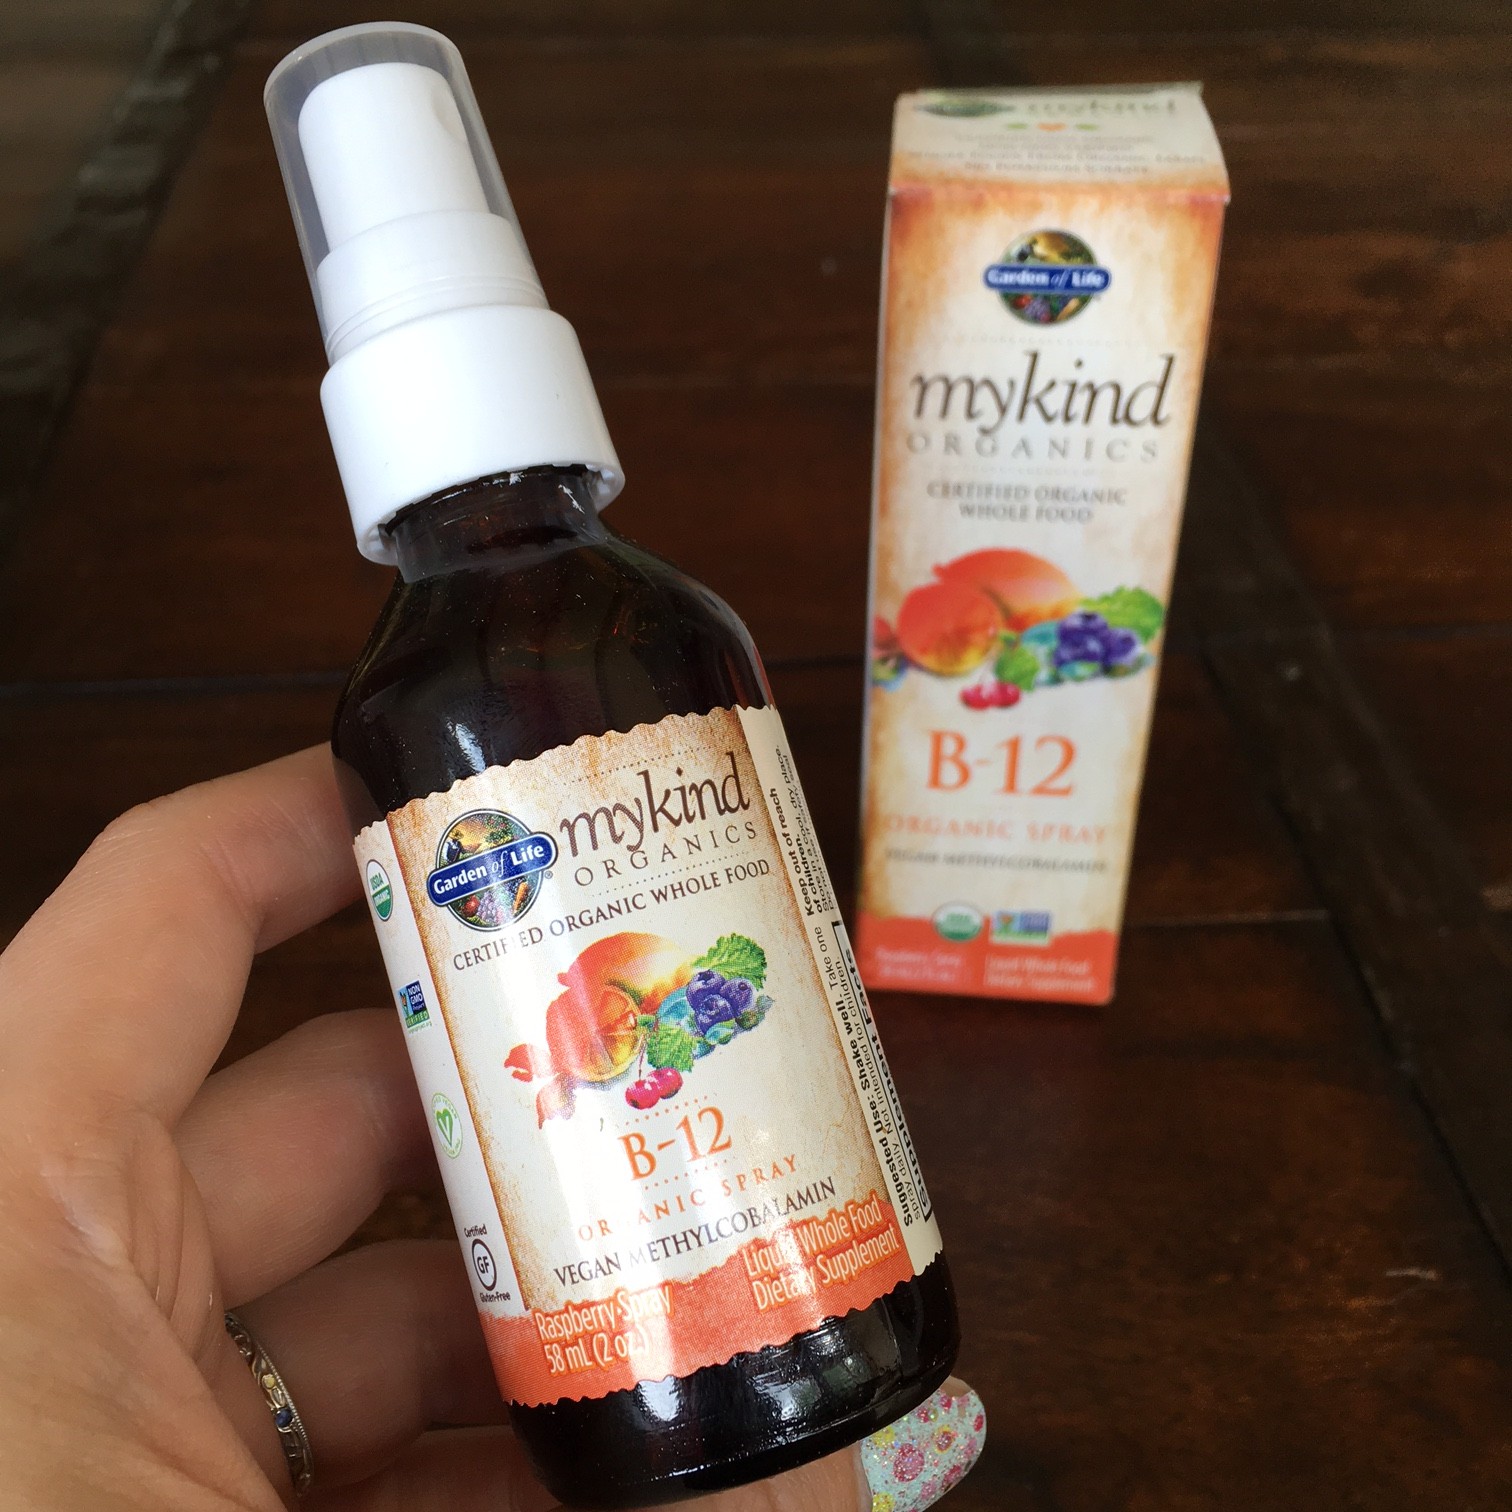 MyKind Organics B12 spray